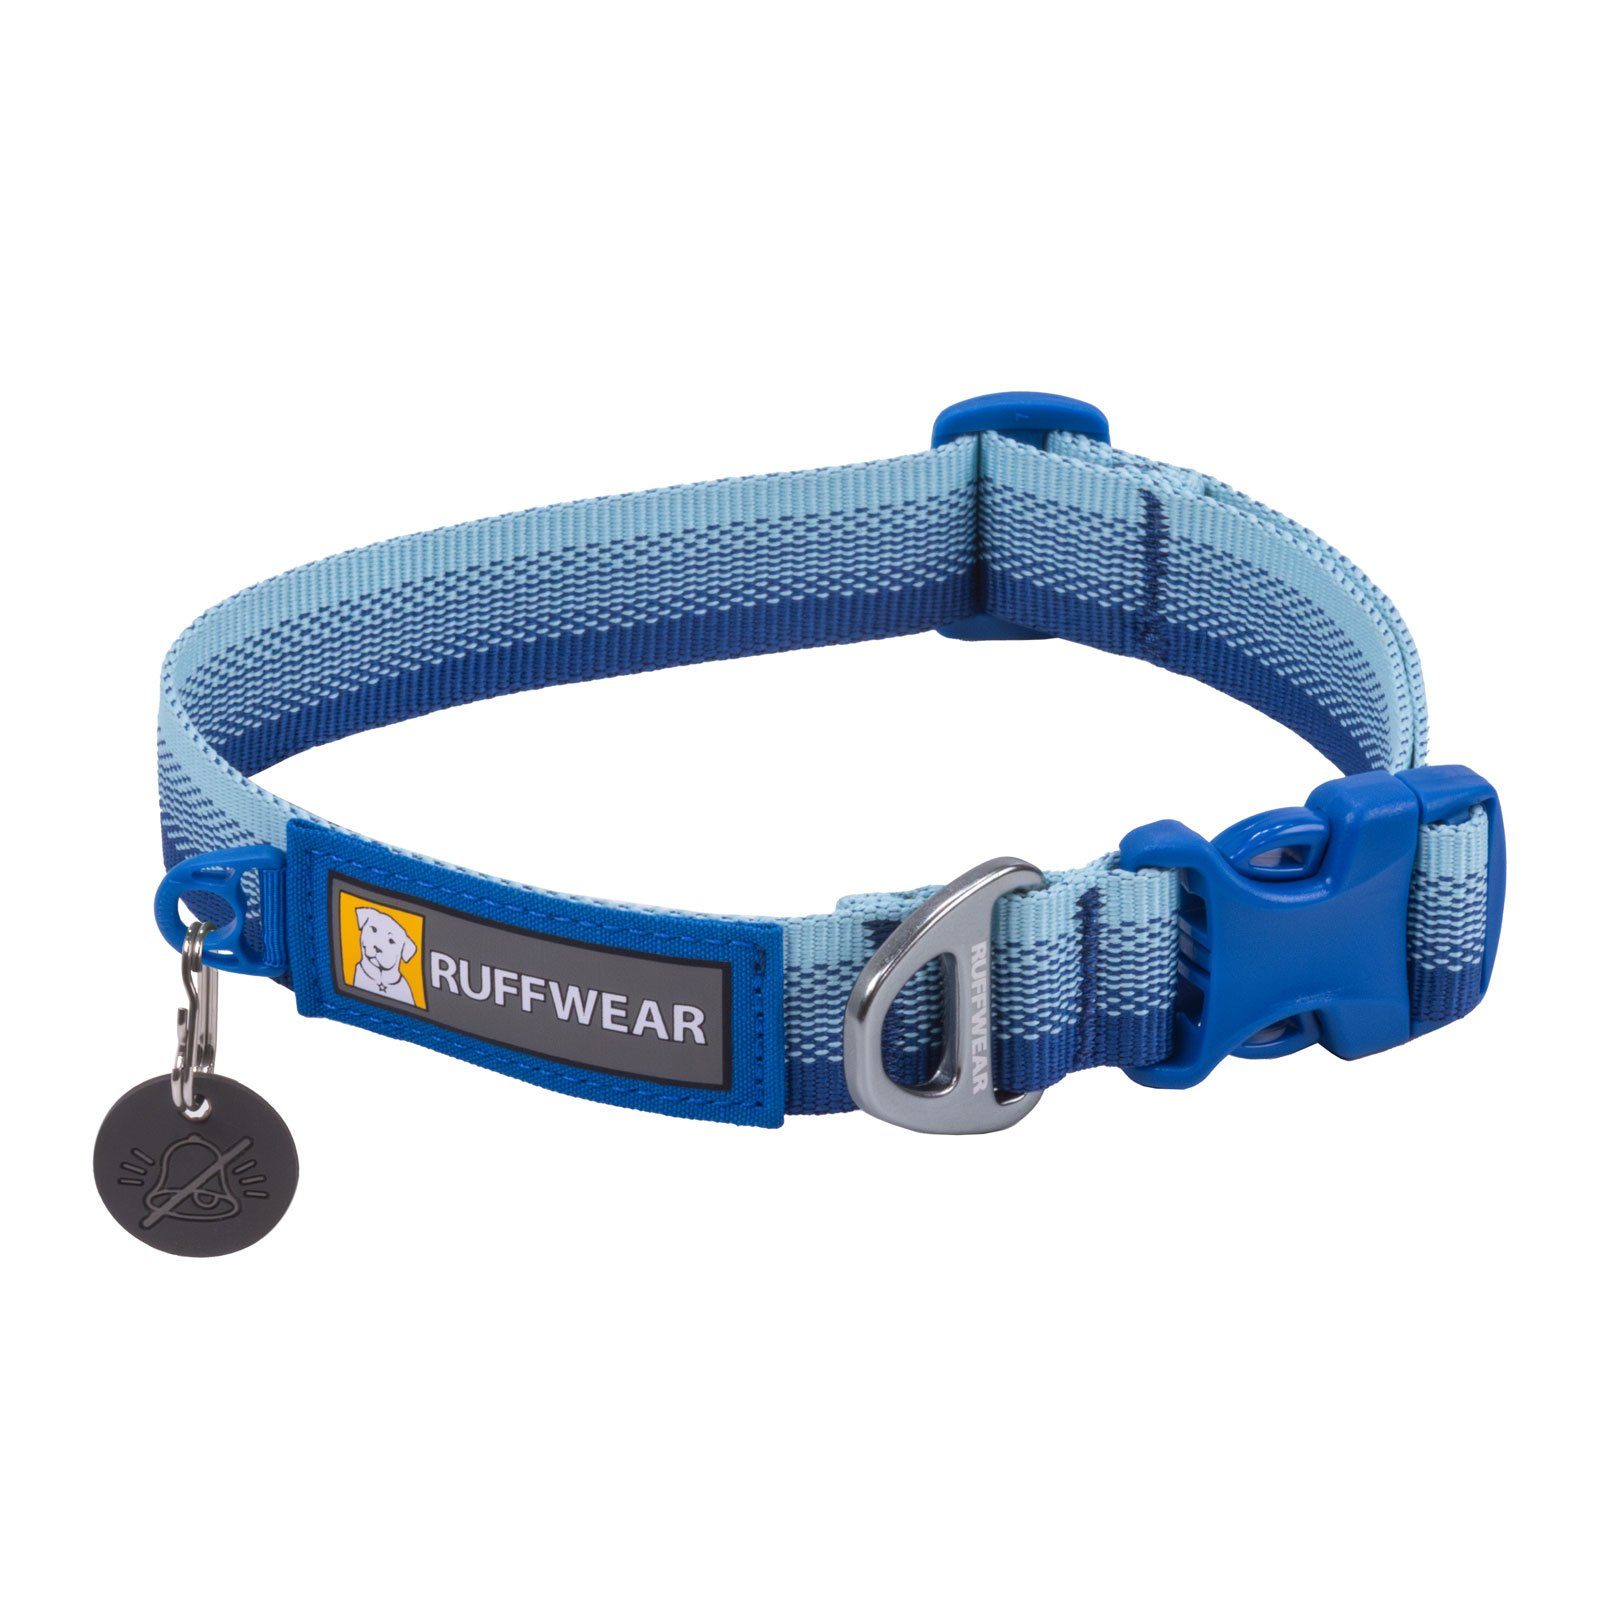 Ruffwear Hunde-Halsband FRONT RANGE™ Collar Constal Fade, 100% Polyester Tubelok™ Schlauchband (16% recycled), Halsband für alltägliche Abenteuer.